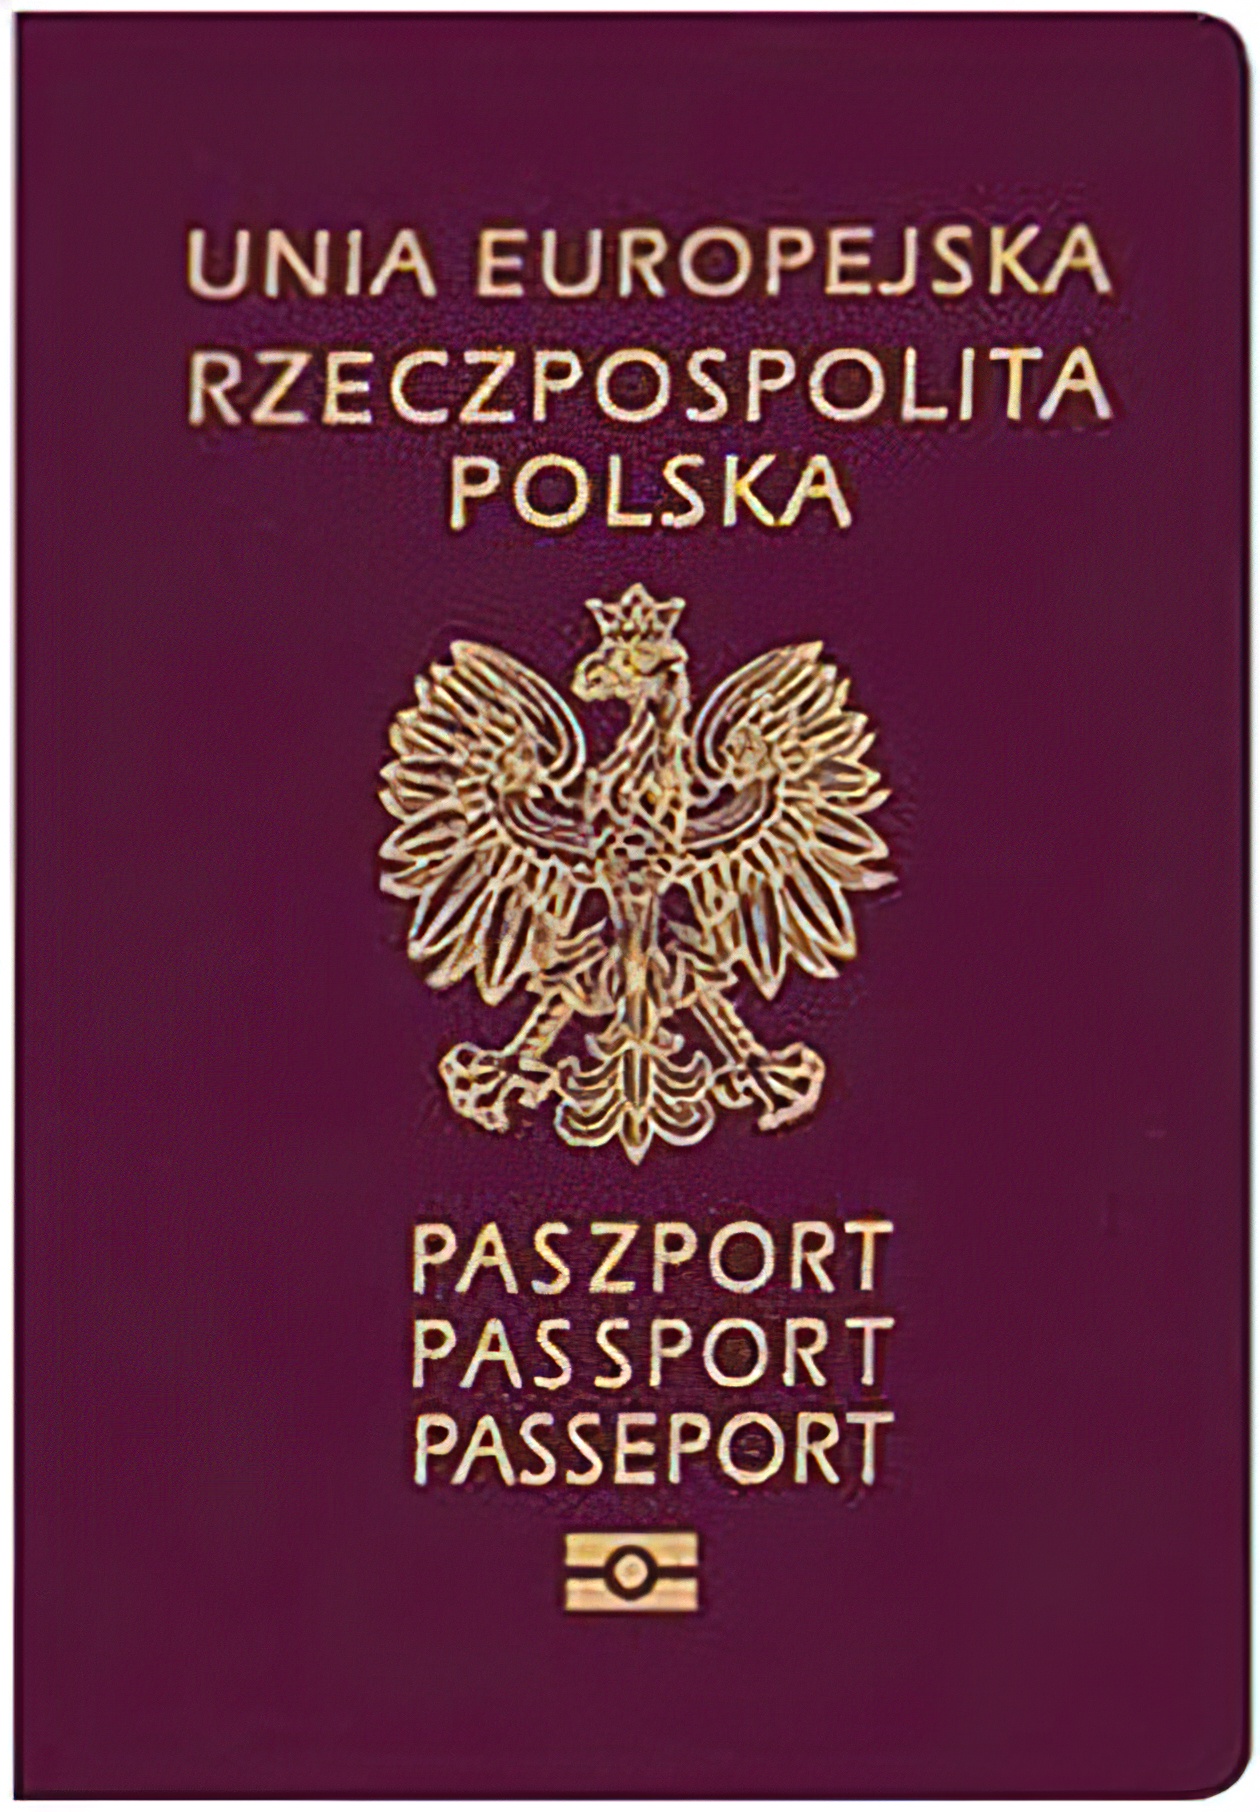 W Mińsku Mazowieckim / Paszport od zaraz